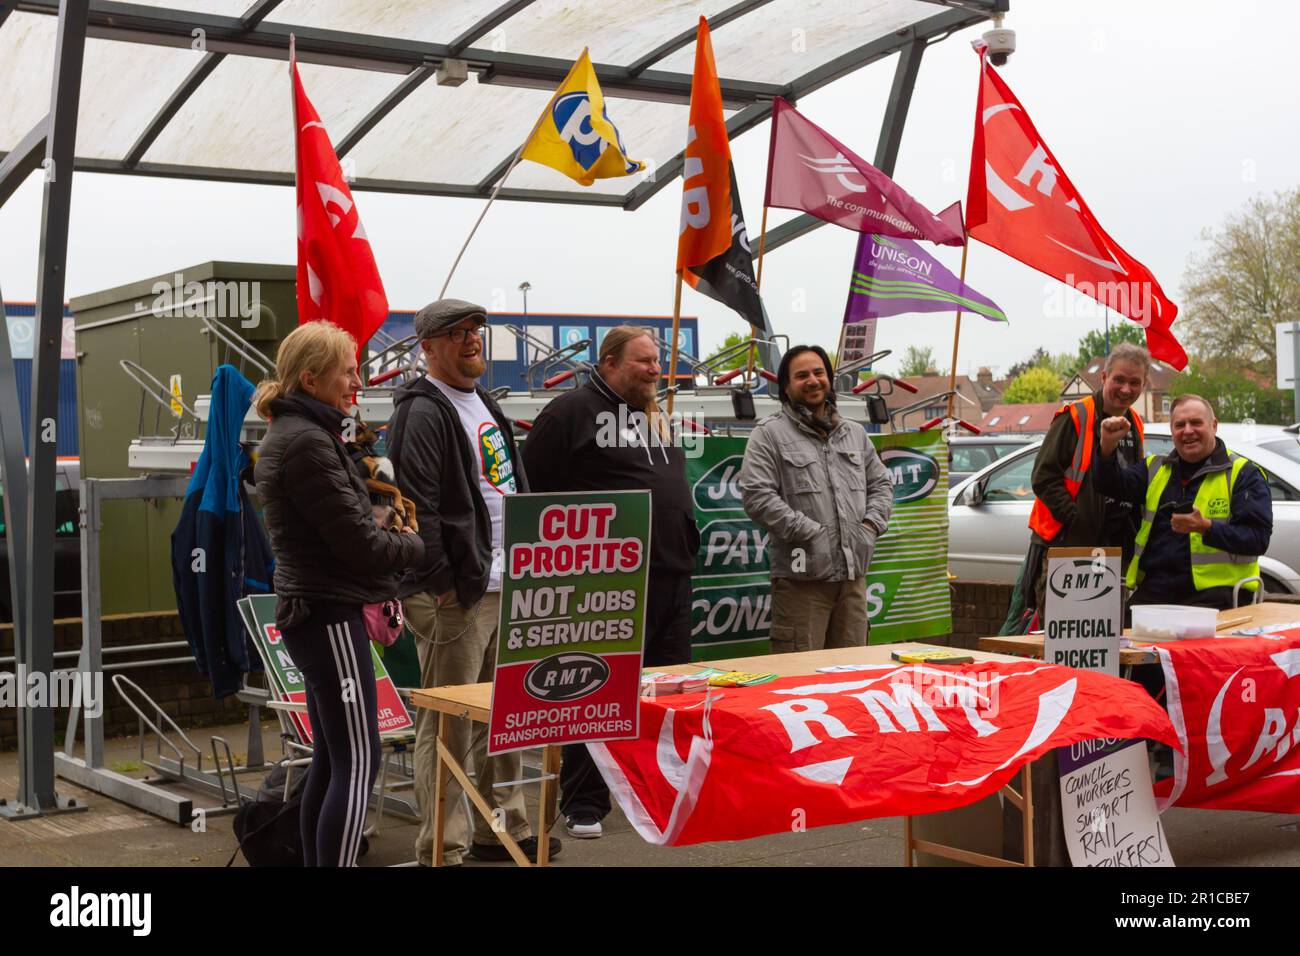 Los sindicatos de transporte continúan la huelga por acuerdo salarial este fin de semana, Foto de stock